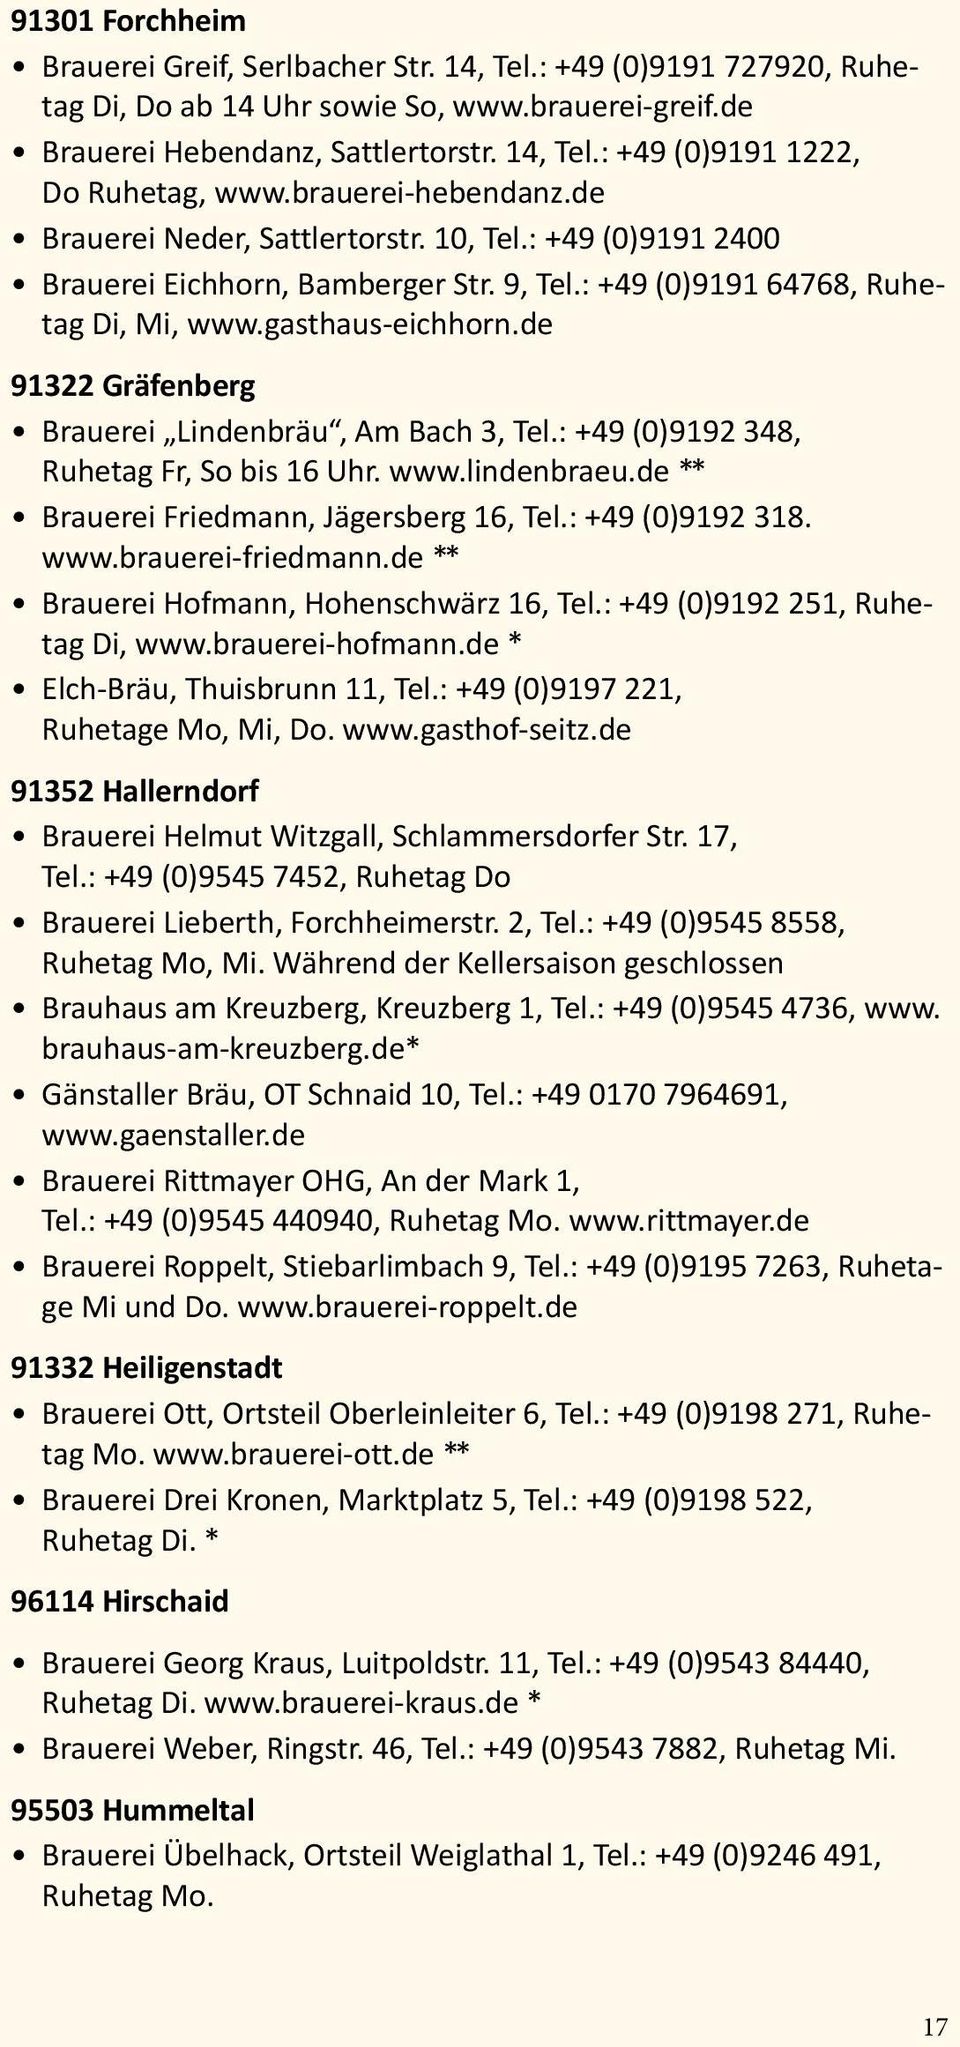 de 91322 Gräfenberg Brauerei Lindenbräu, Am Bach 3, Tel.: +49 (0)9192 348, Ruhetag Fr, So bis 16 Uhr. www.lindenbraeu.de ** Brauerei Friedmann, Jägersberg 16, Tel.: +49 (0)9192 318. www.brauerei-friedmann.